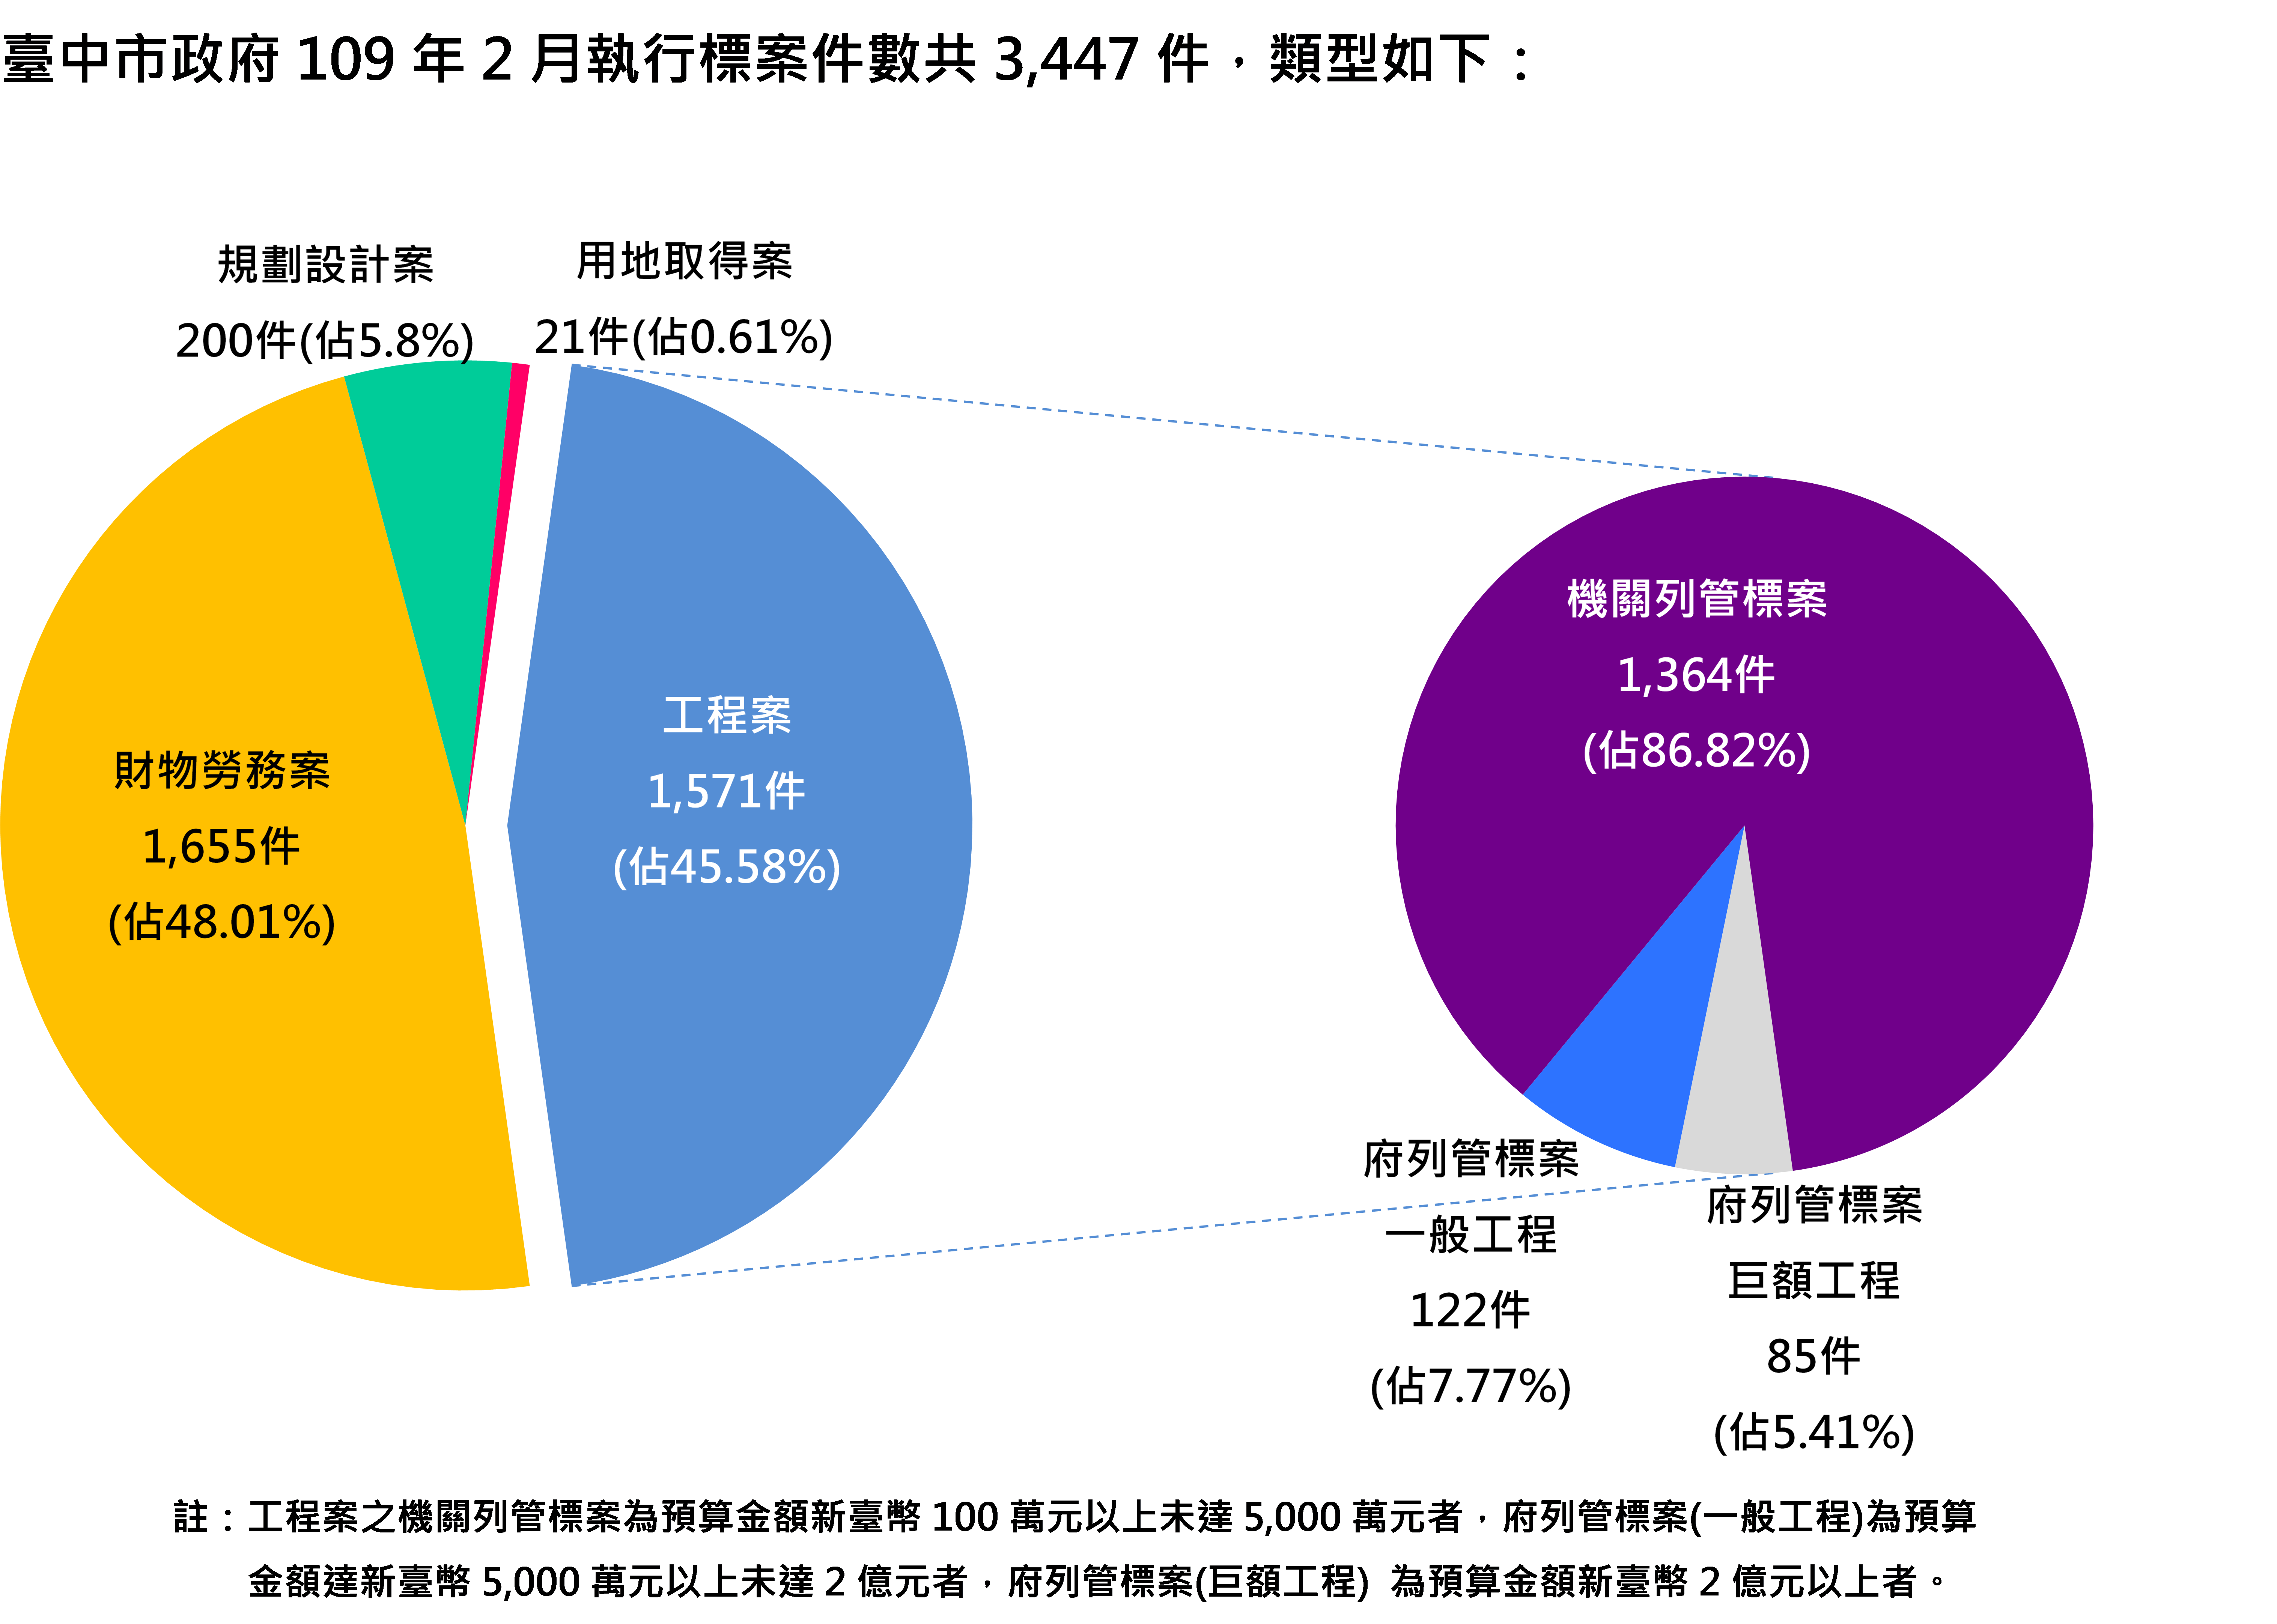 臺中市政府109年2月執行標案案件數類型圖